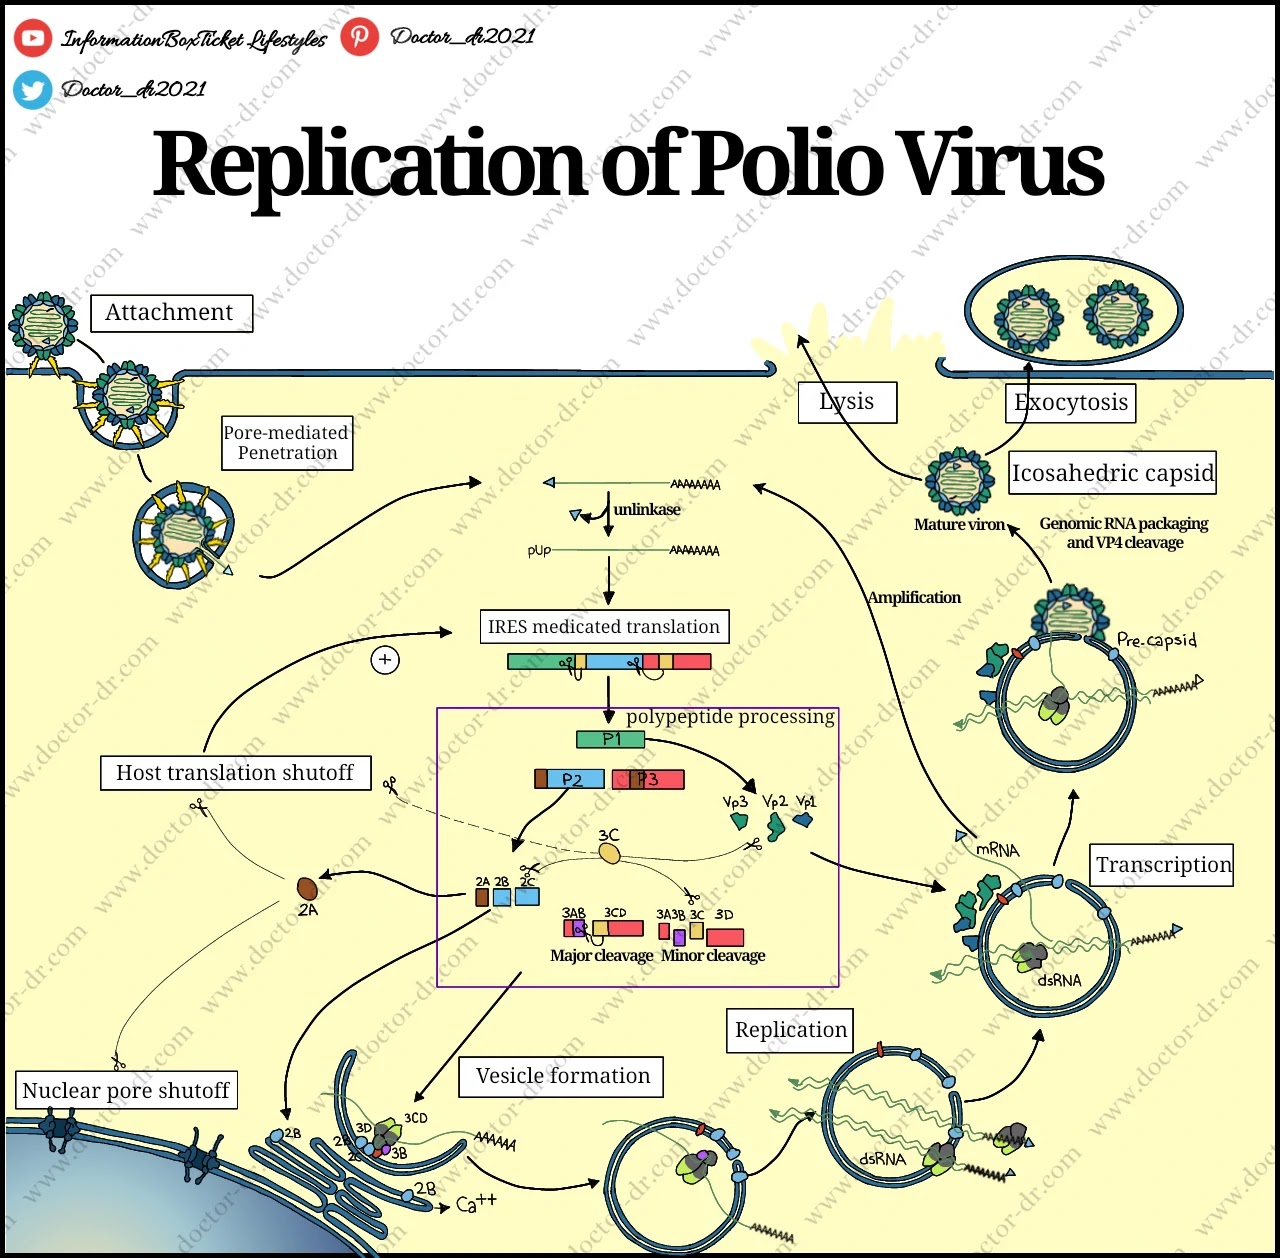 Replication of Polio Virus